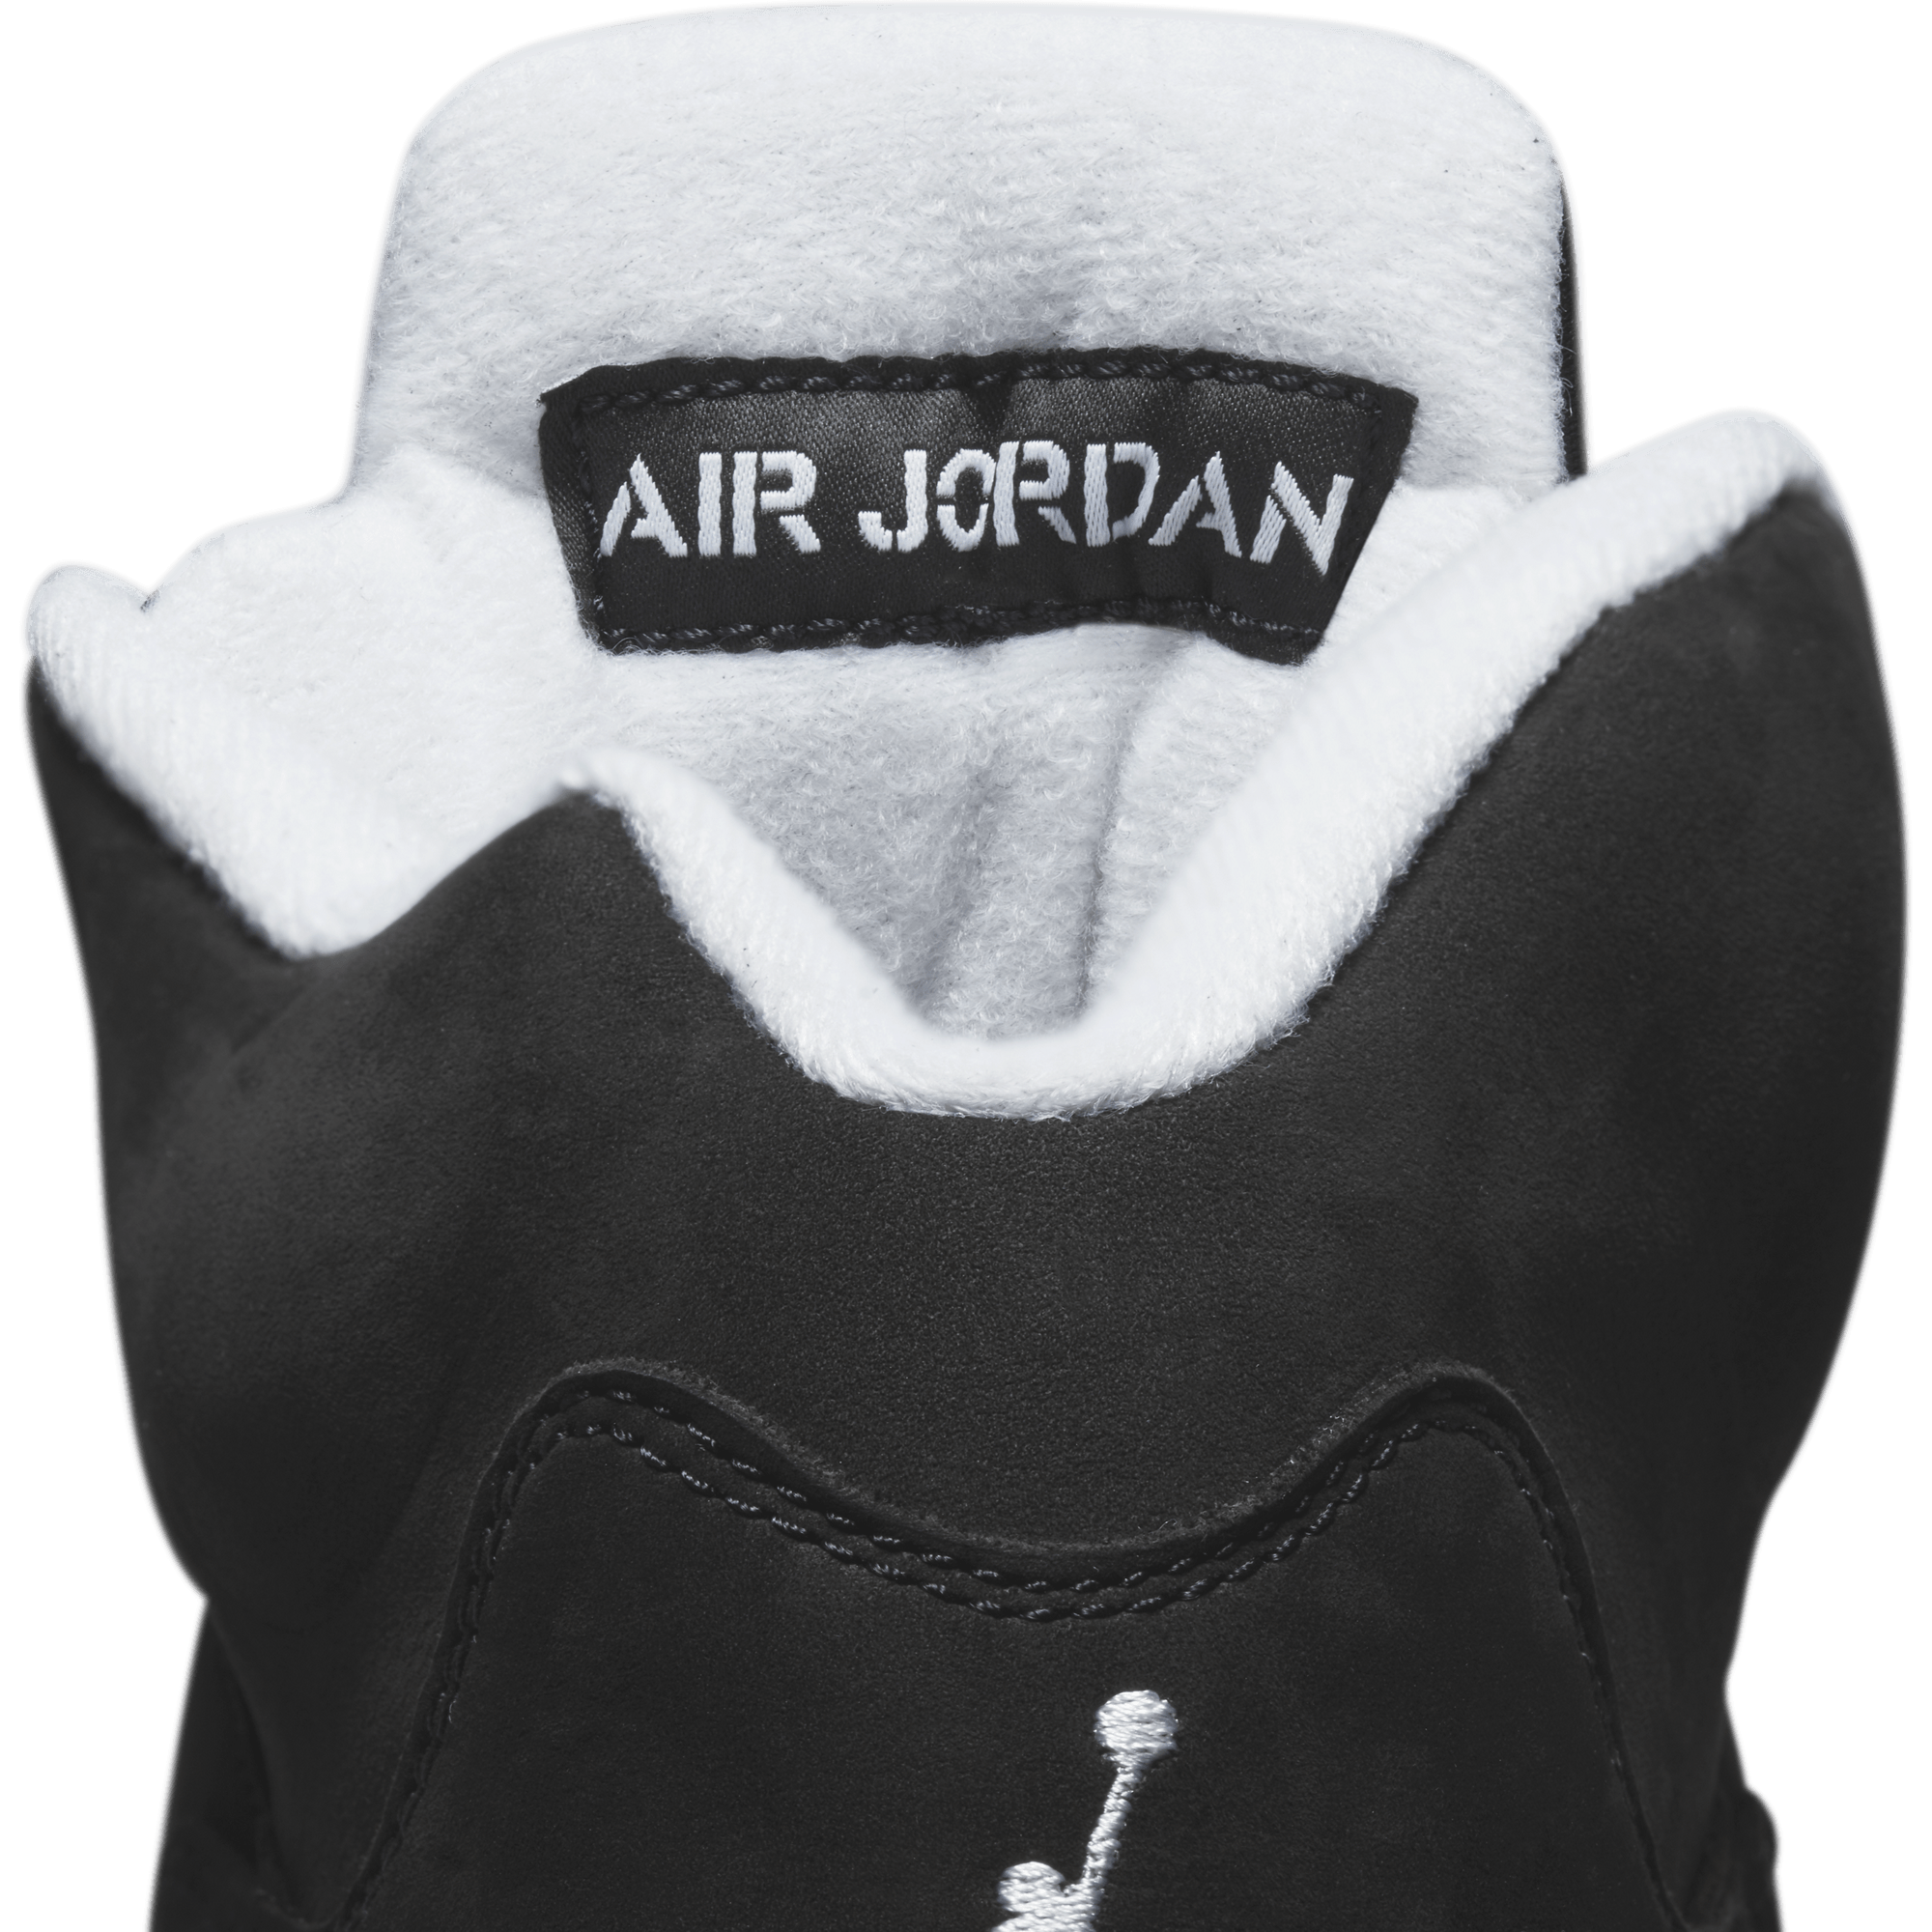 Air Jordan Air Jordan 5 Retro “Oreo” aka “Moonlight”